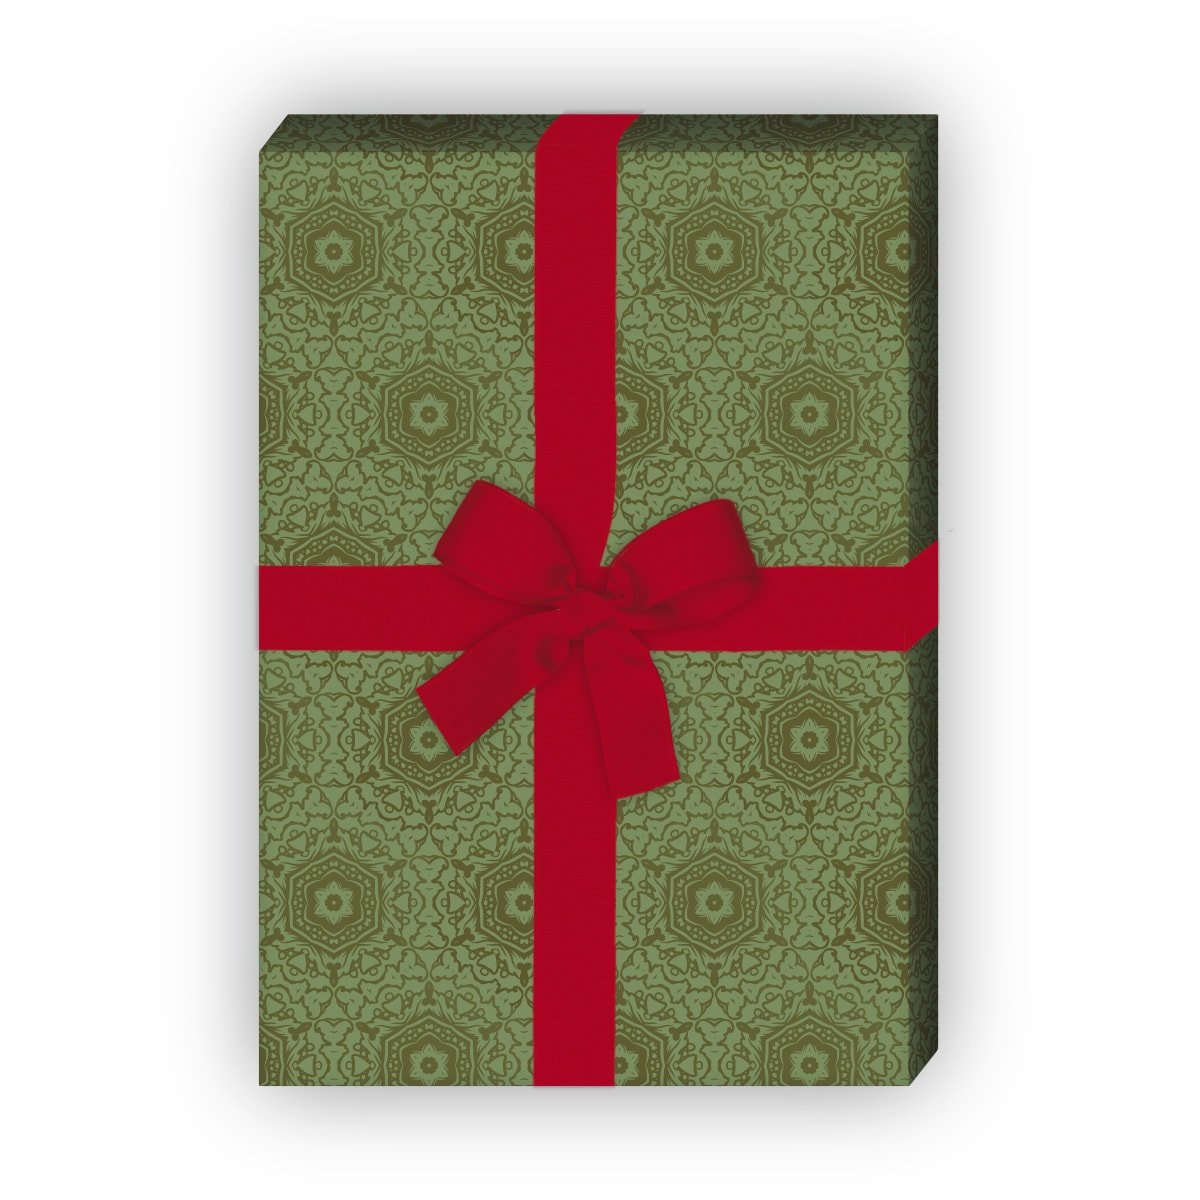 Kartenkaufrausch: Ornamentales Geschenkpapier für liebevolle aus unserer Designer Papeterie in grün